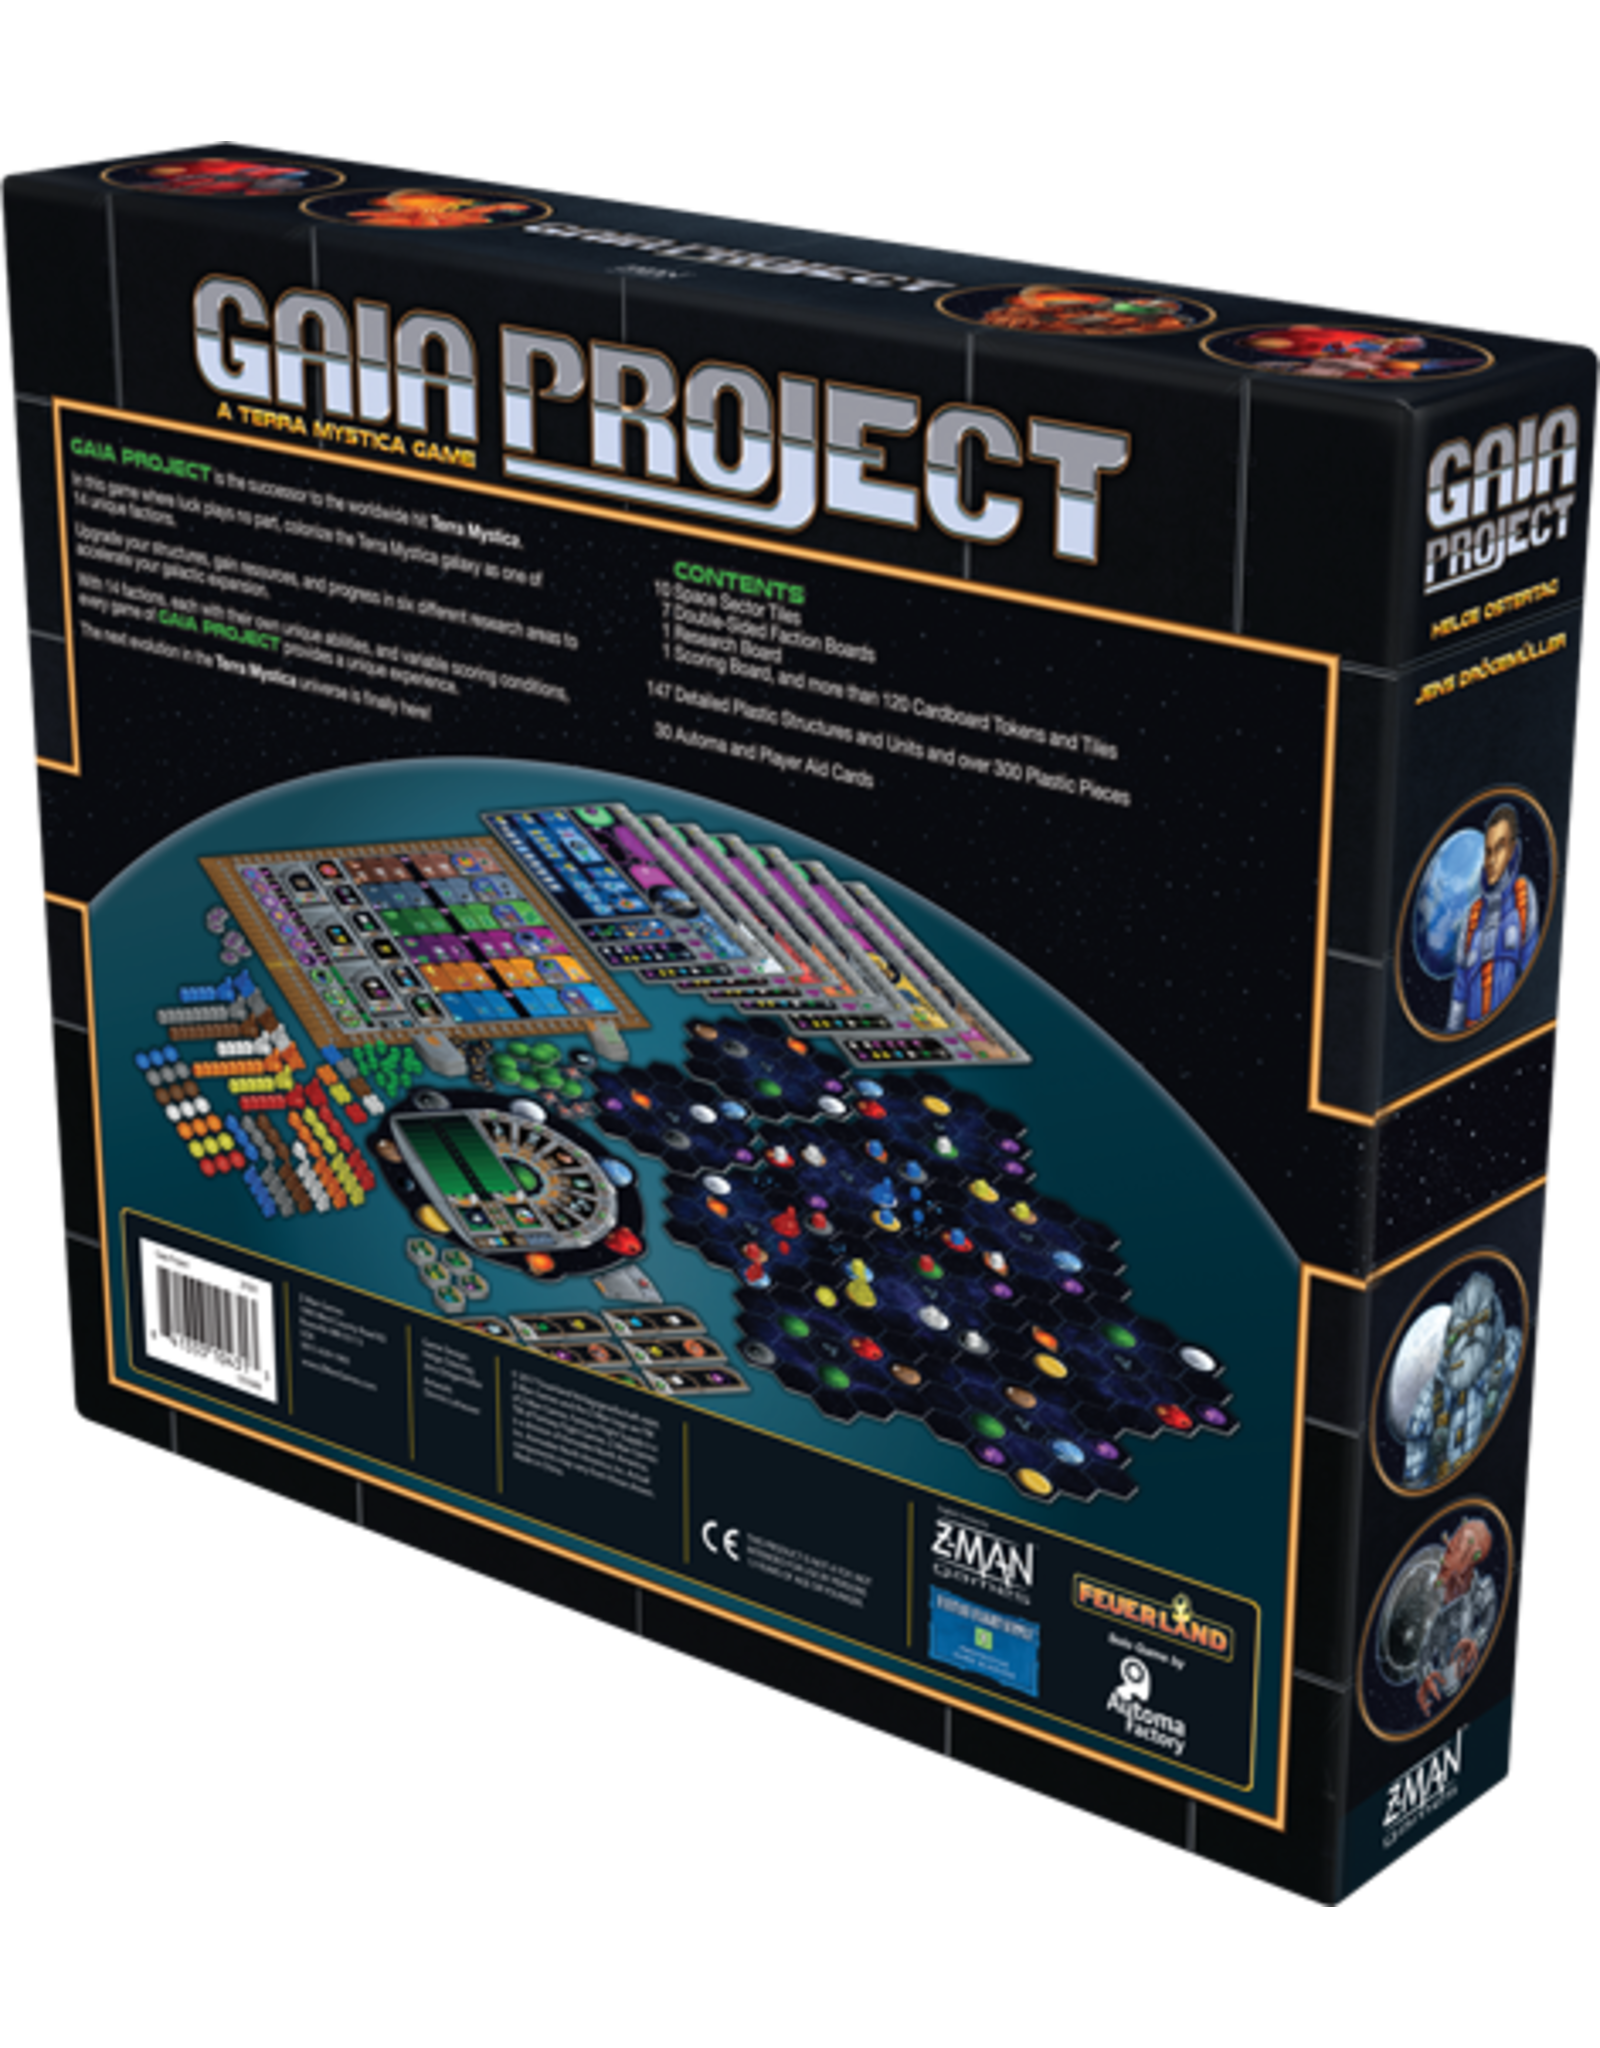 Z-Man Games Gaia Project: A Terra Mystica Game